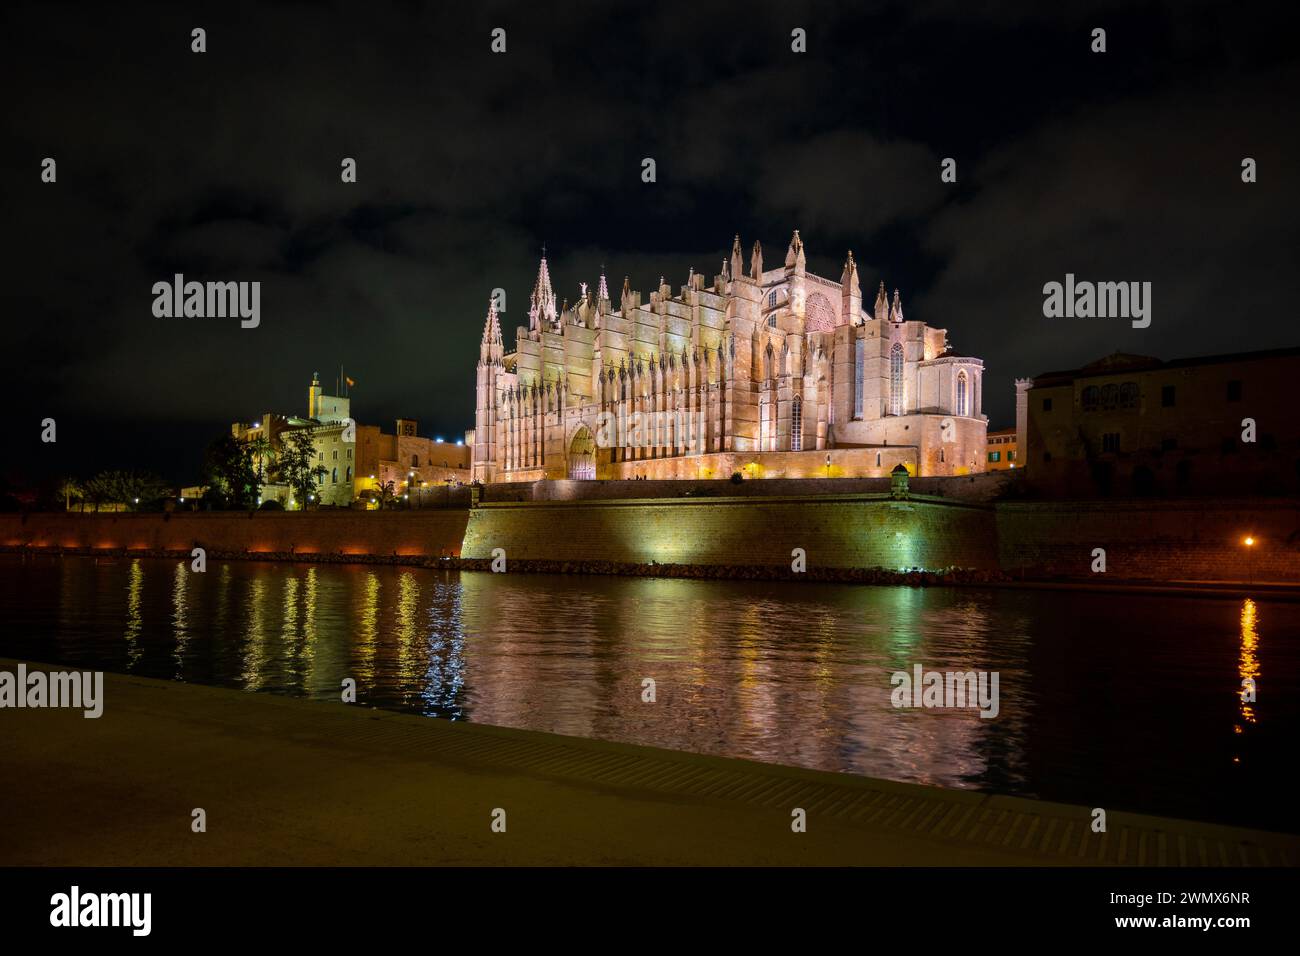 Palma, Spanien, beleuchtet die Kathedrale Santa Maria von Palma (Kathedrale von St. Maria von Palma) oder als La Seu bekannt, nur redaktionell. Stockfoto